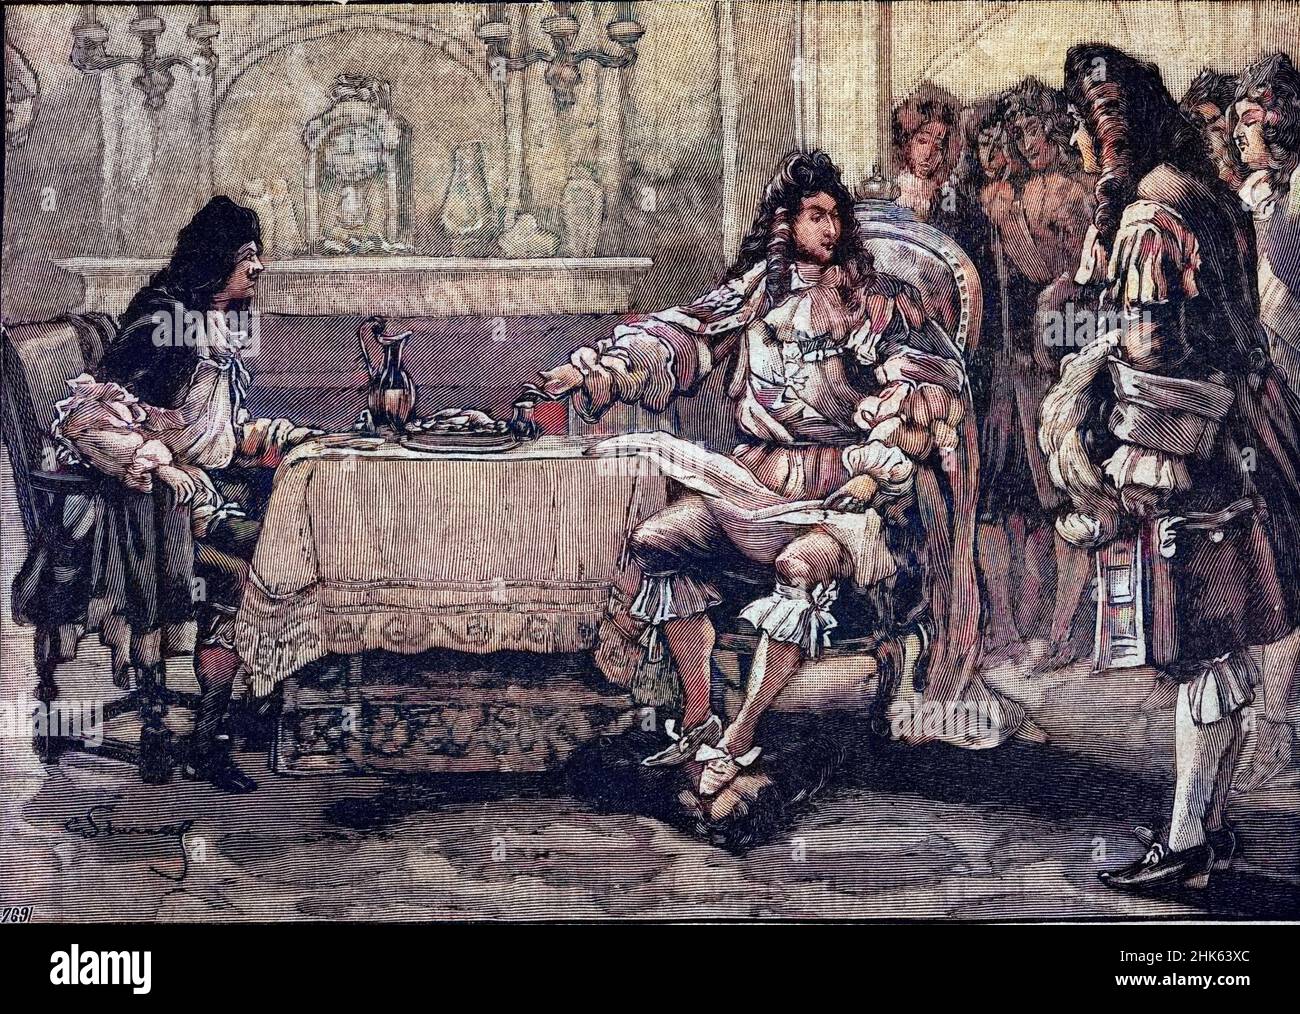 Louis XIV faisant souper Moliere : sous le regard de ses courtisans Louis XIV convie Jean Baptiste Poquelin dit Moliere a sa table pour le diner. Gravure In 'La cuisine des familles' de 1905-1908 Stock Photo